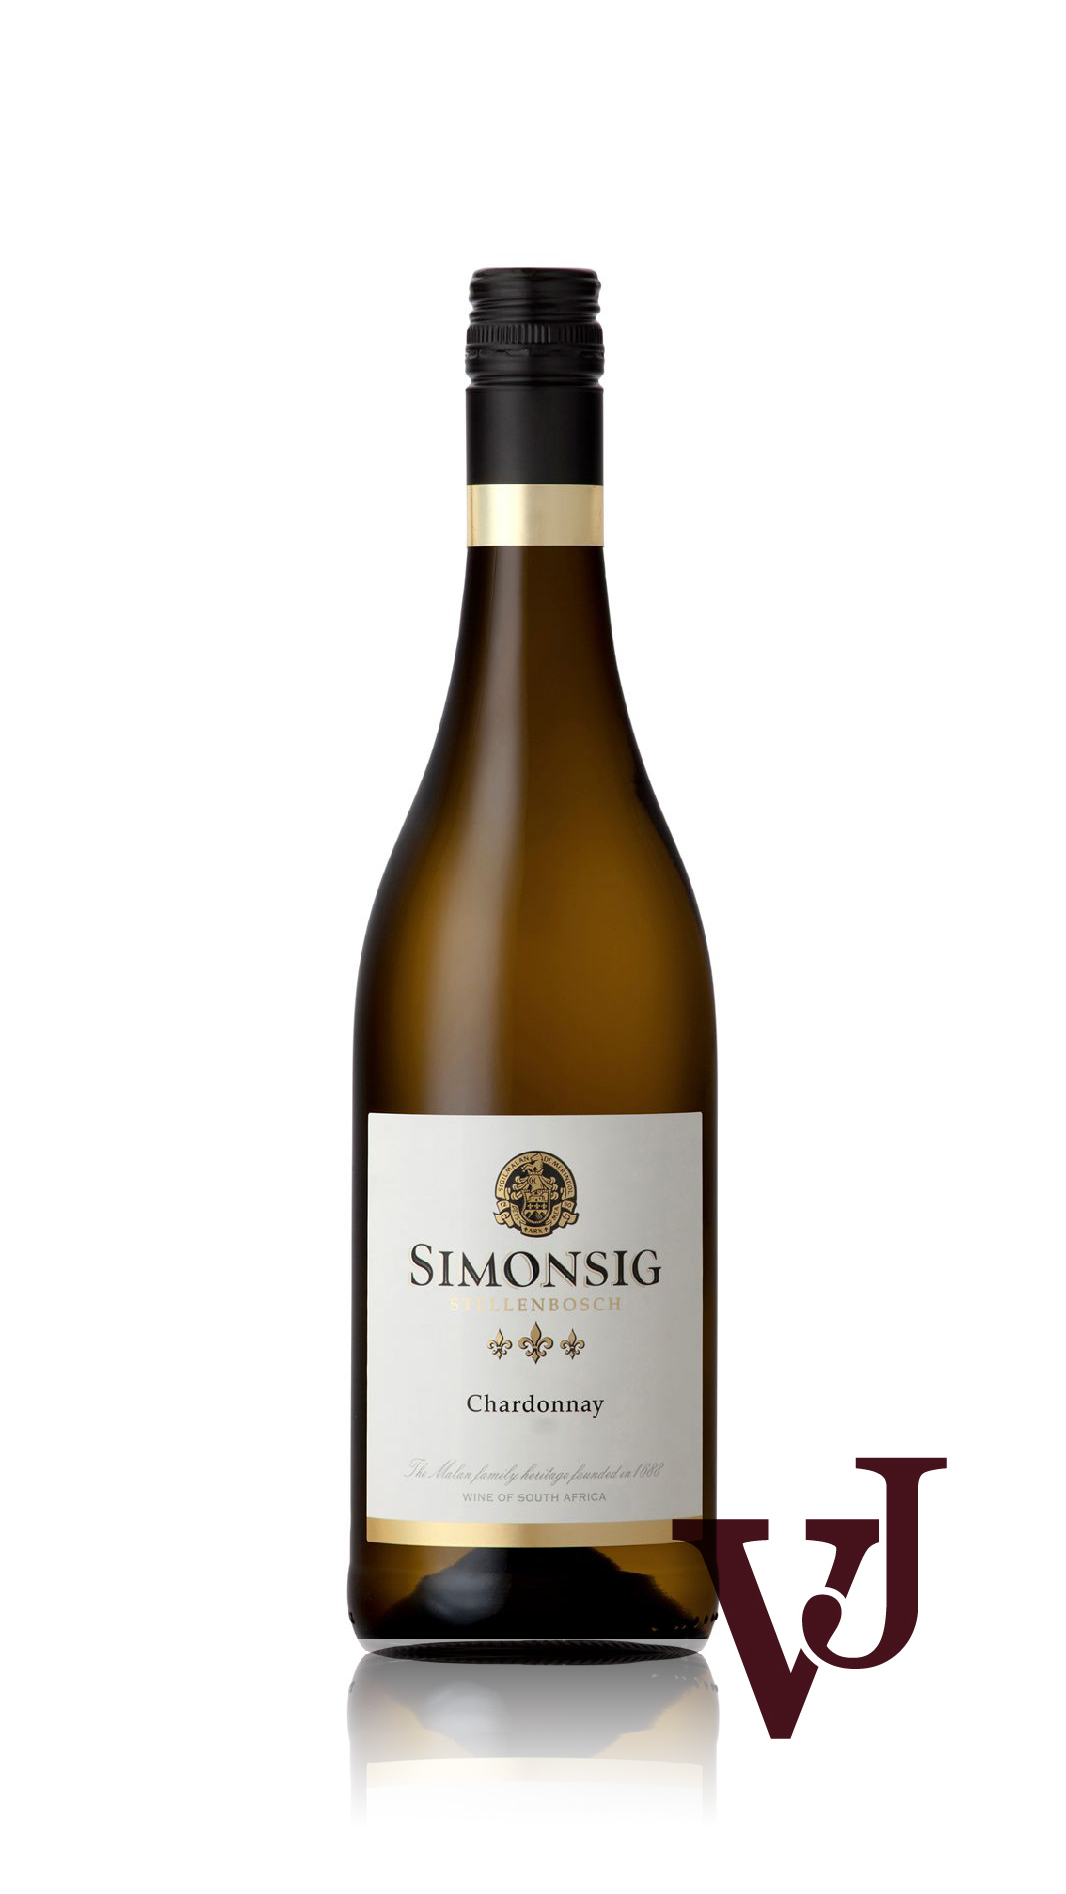 Vitt Vin - Simonsig Chardonnay artikel nummer 203201 från producenten Simonsig Estate från området Sydafrika